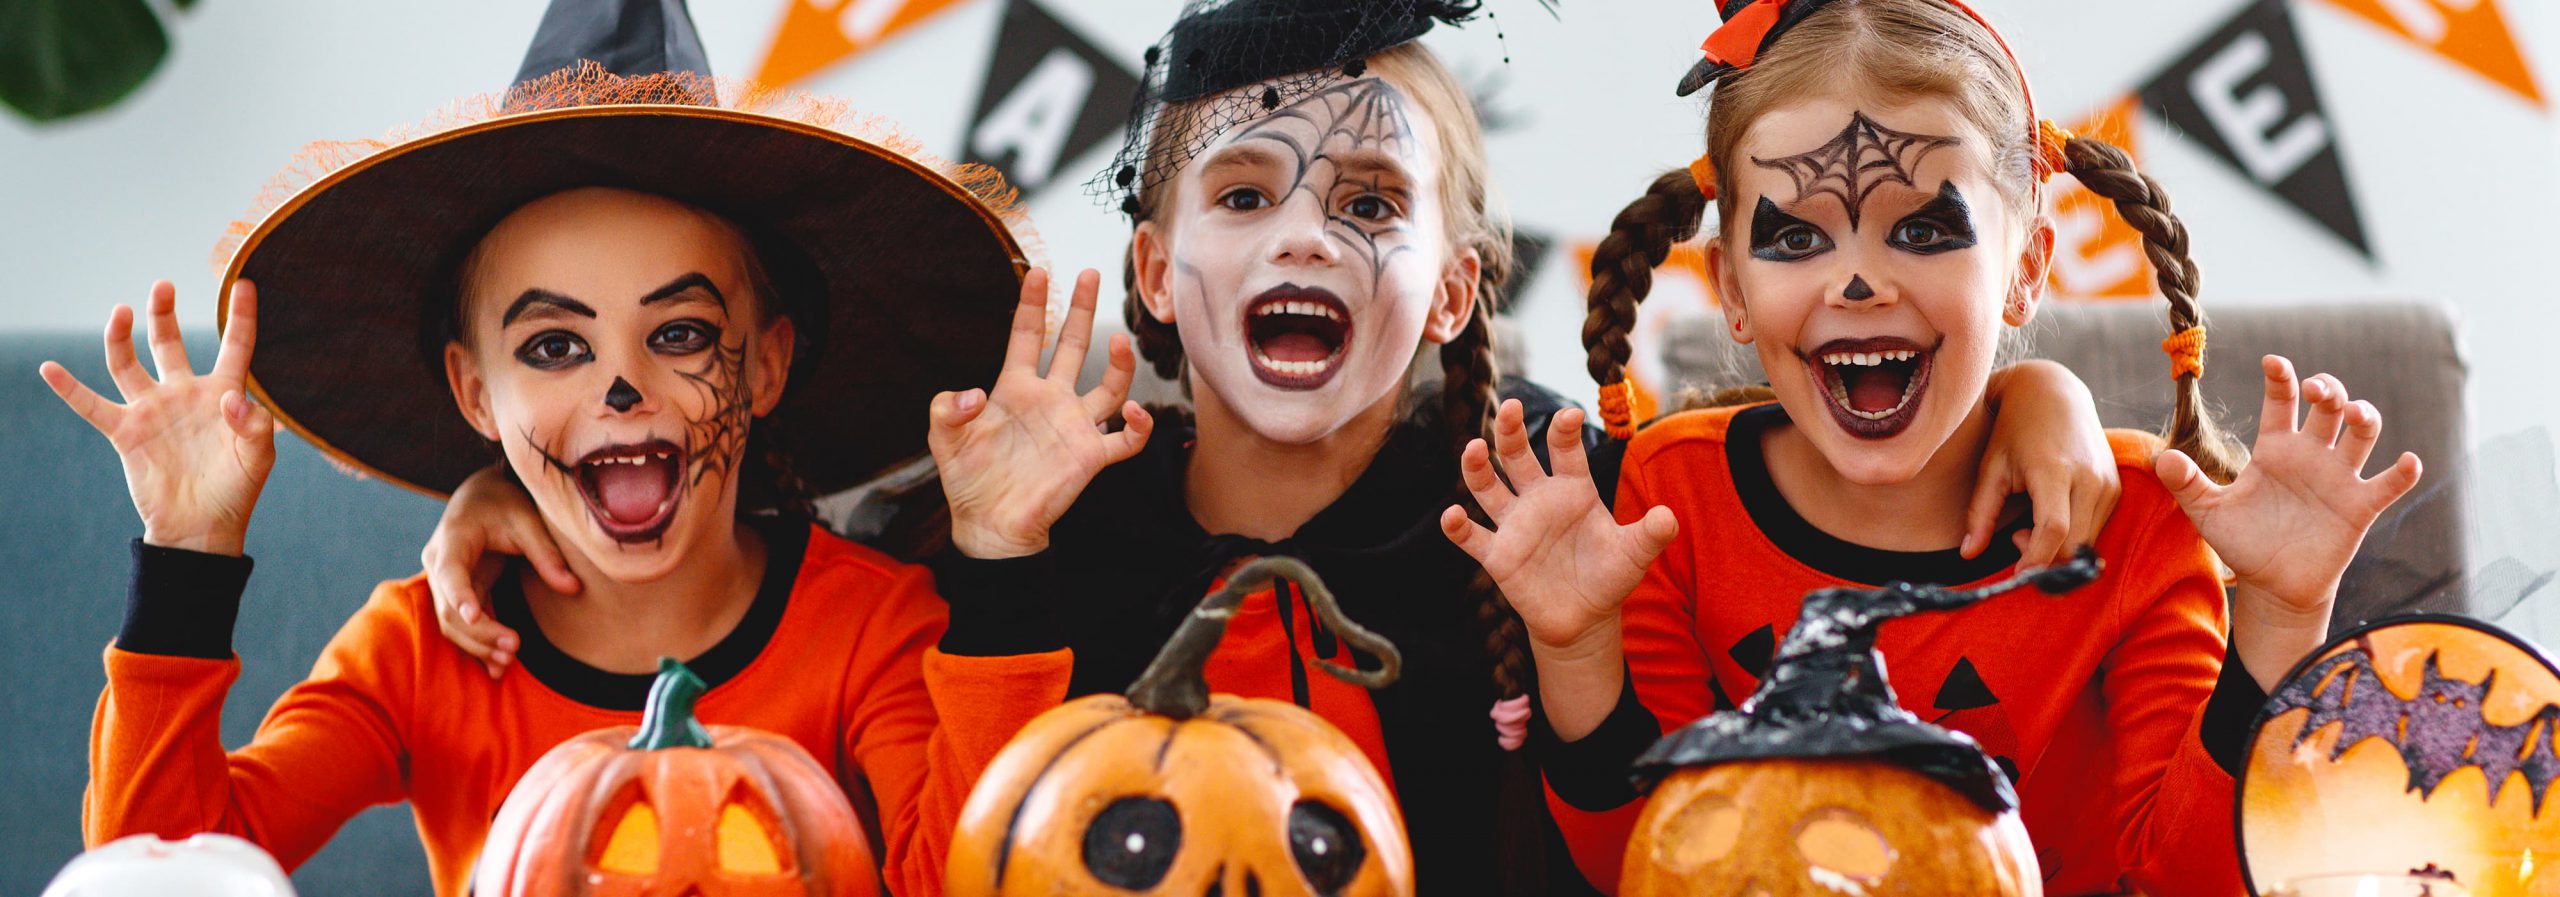 como resultado roto Pebish Halloween en familia, un recuerdo inolvidable | Blog Hofmann